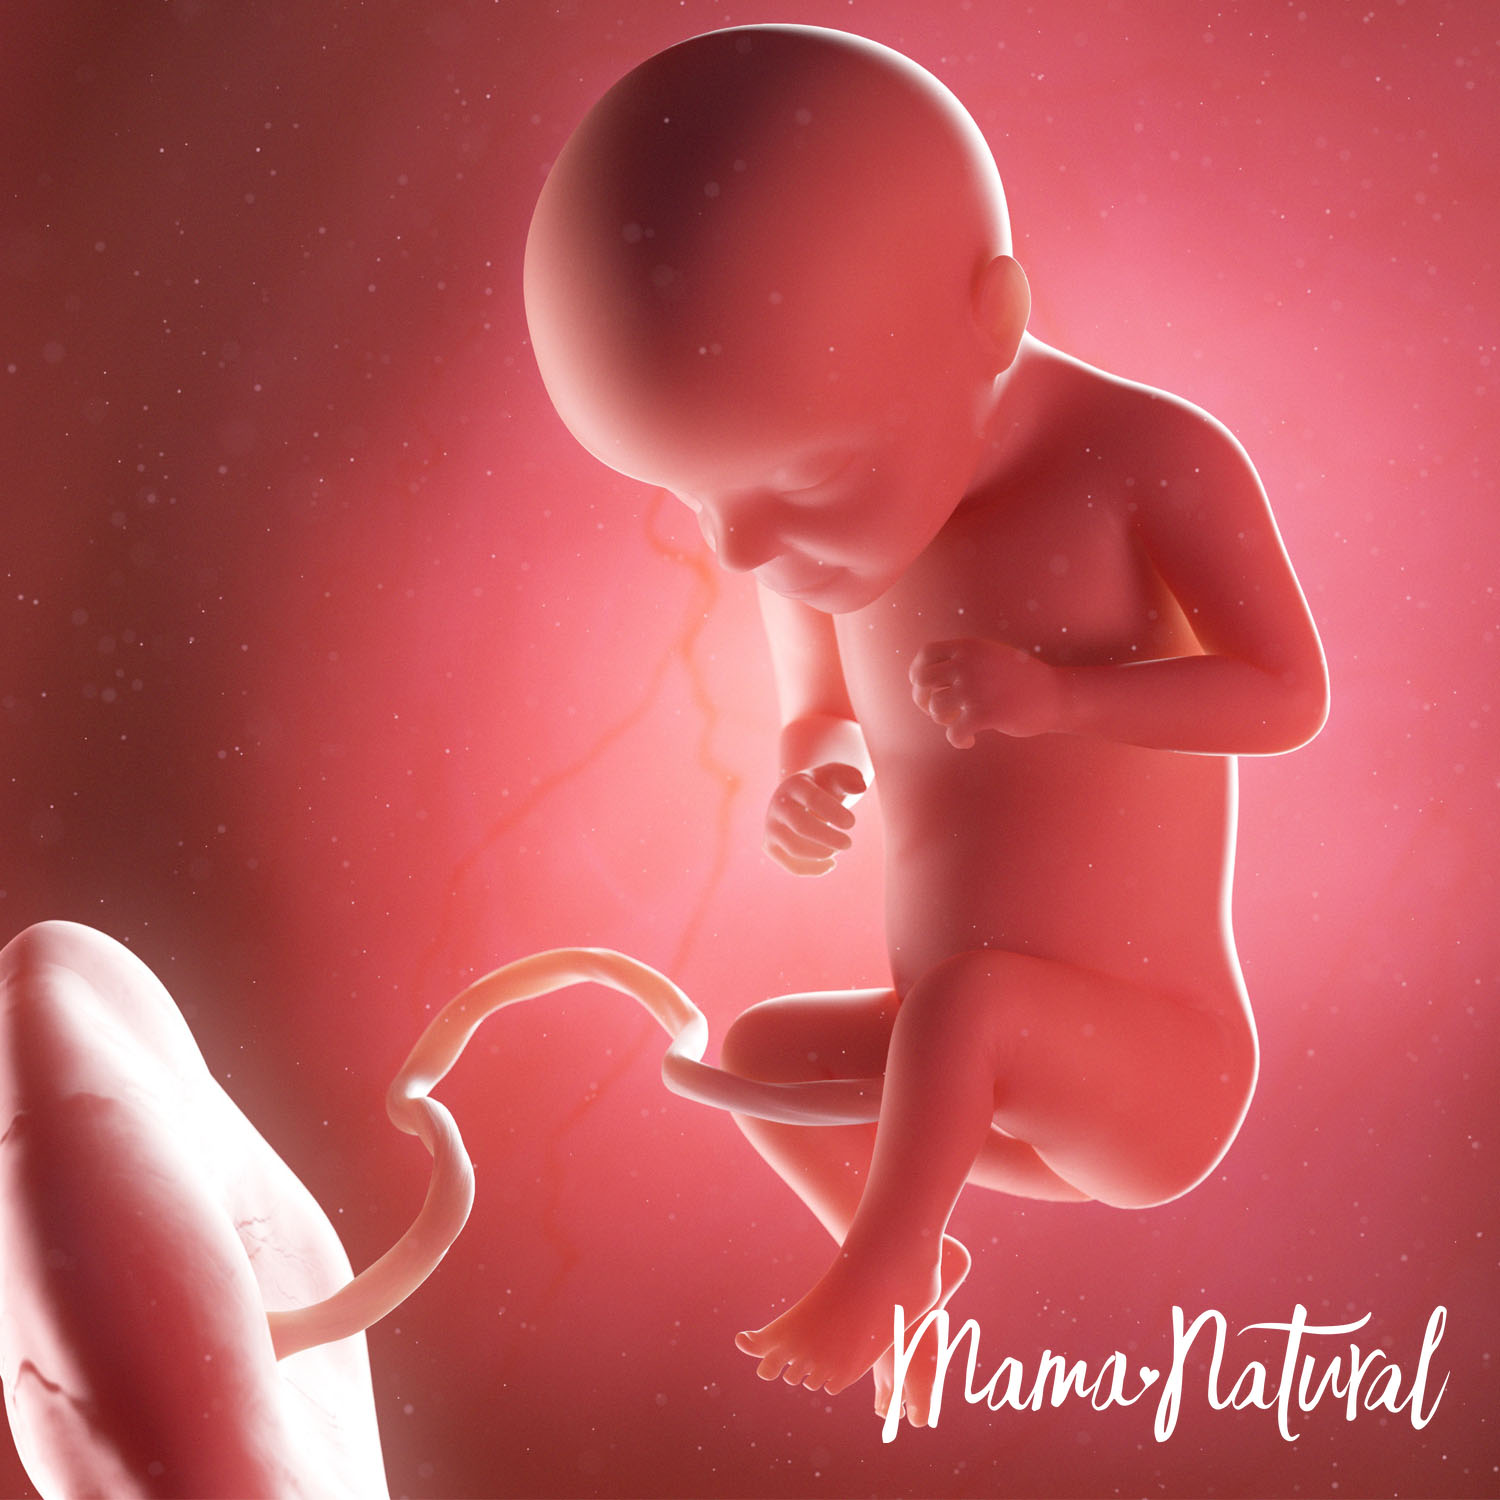 Baby at 29 Weeks Pregnant - Pregnancy Week By Week by Mama Natural